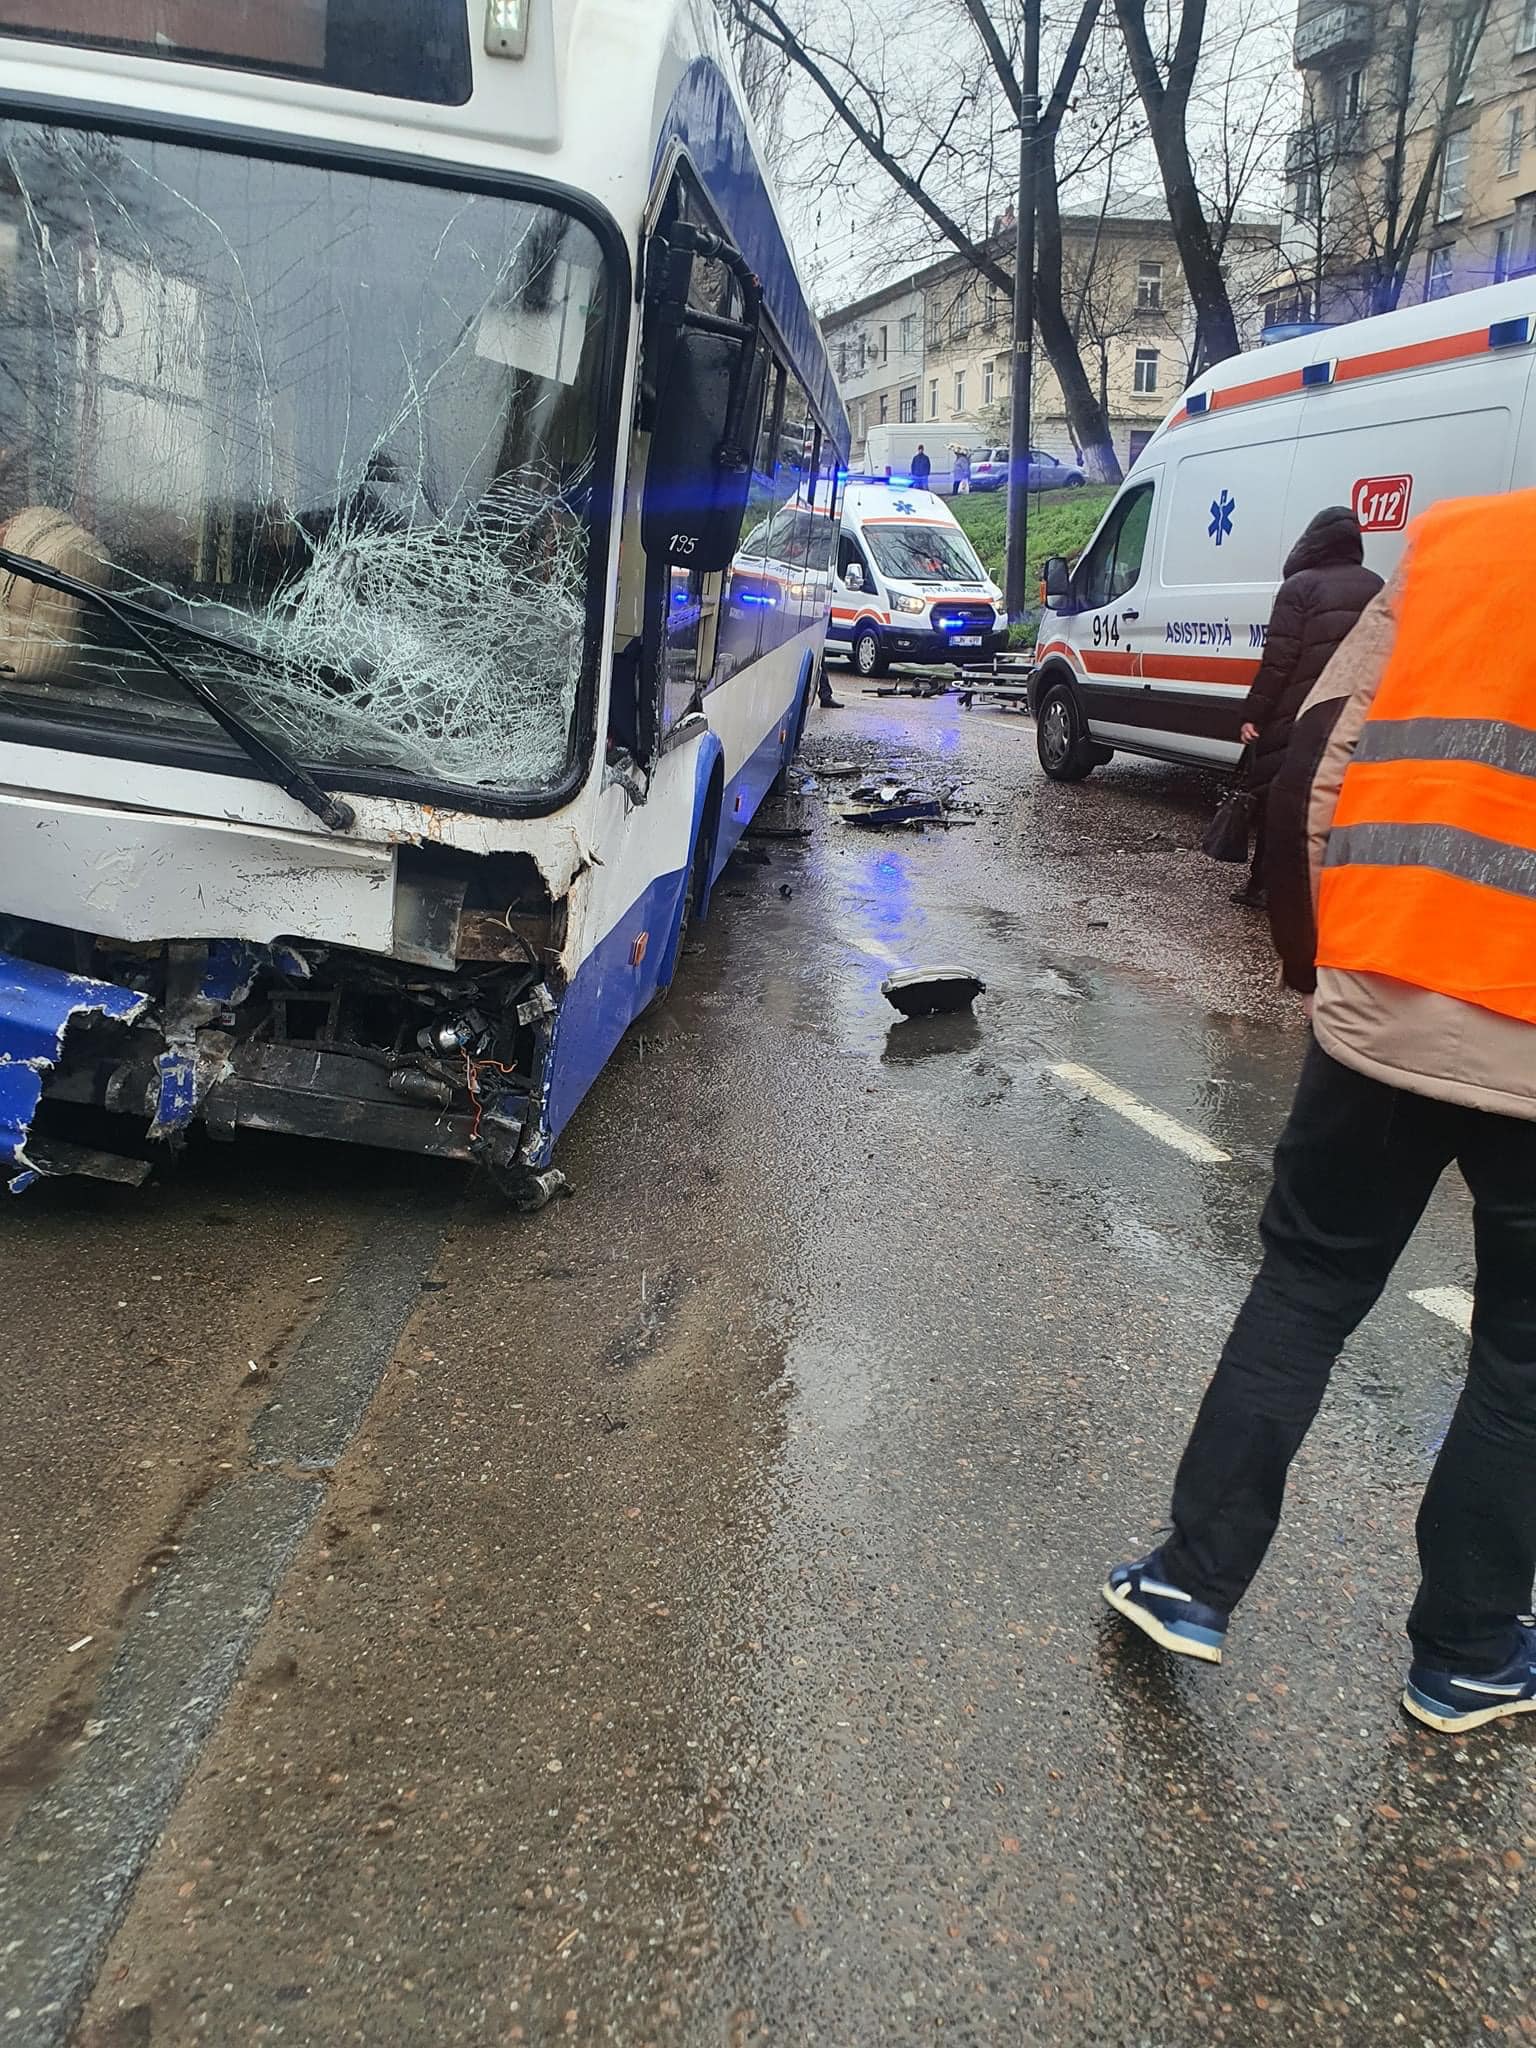 (ФОТО) В Кишиневе автомобиль врезался в троллейбус. Есть пострадавшие